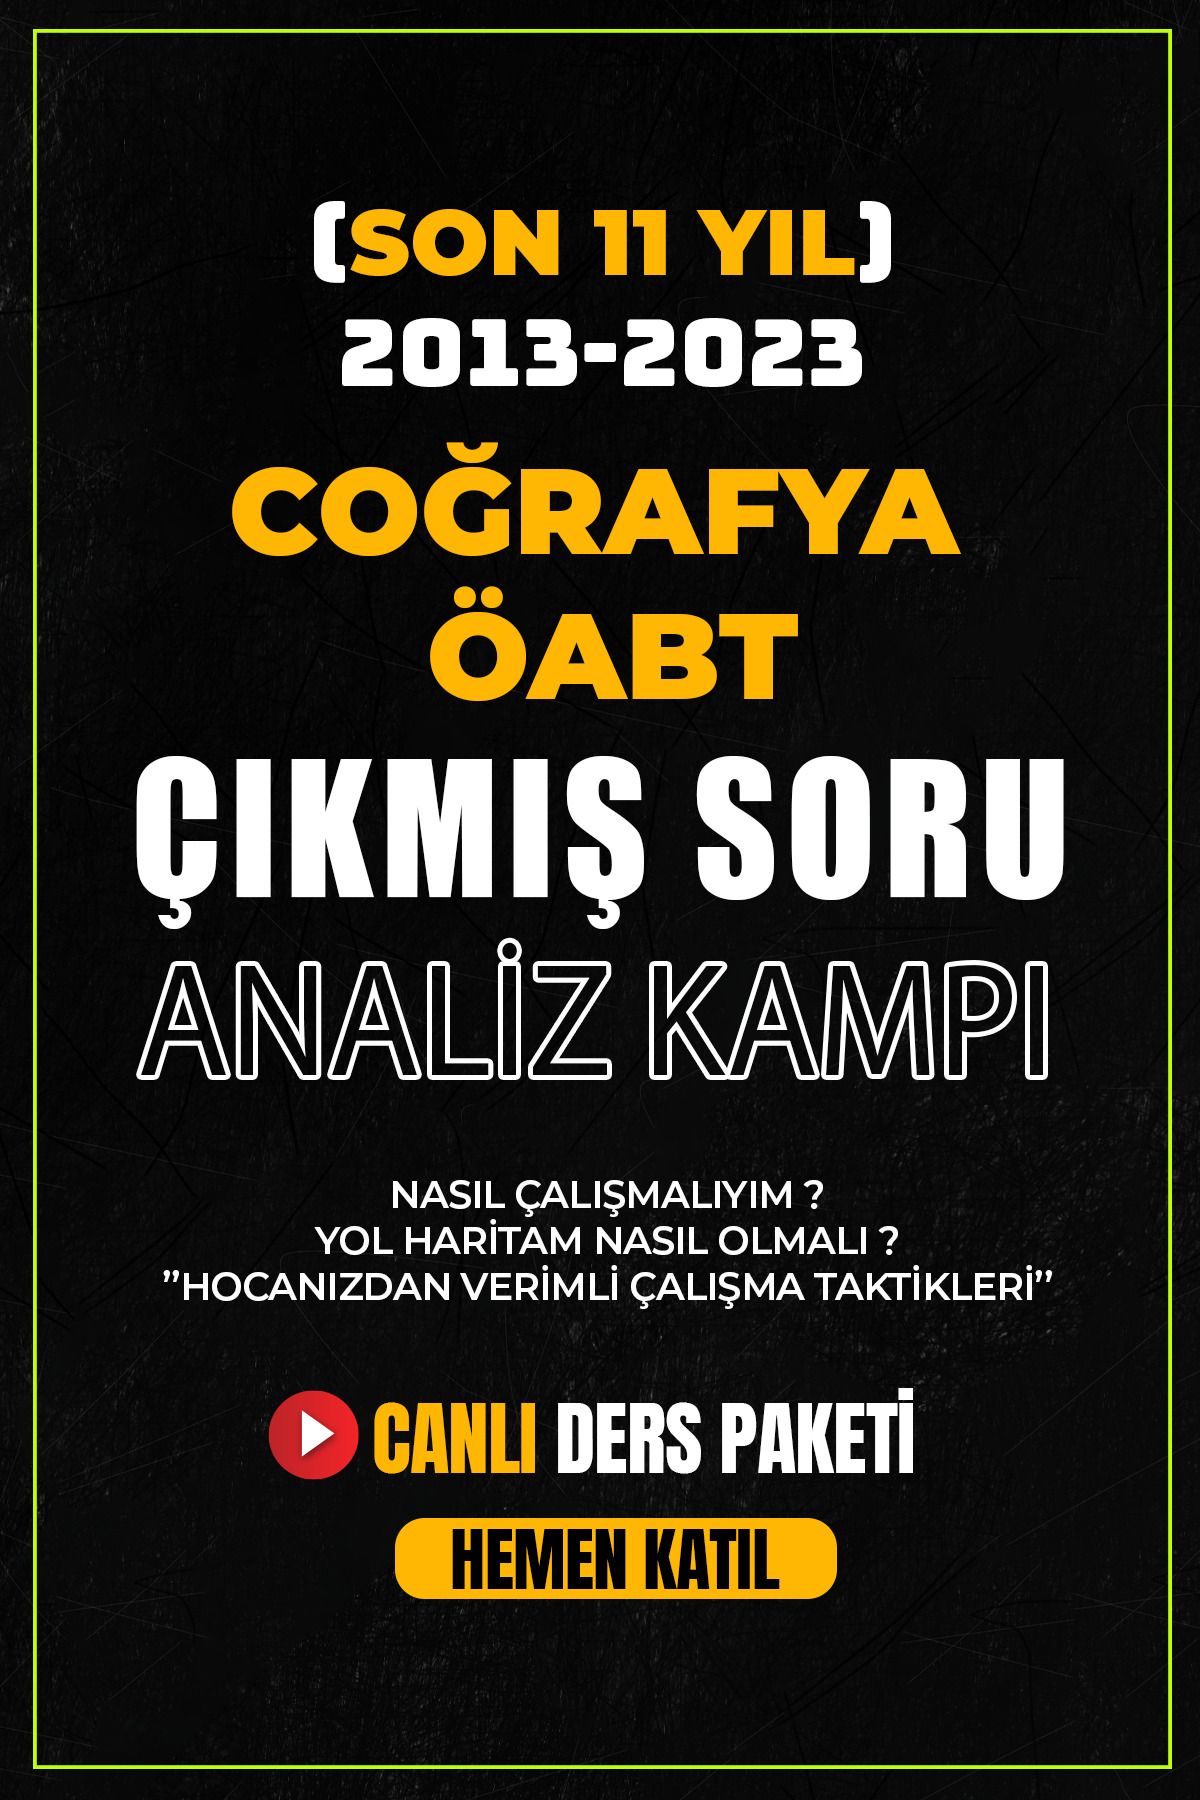 dijital hoca akademi 2013-2023 (SON 11 YIL) COĞRAFYA ÖABT Çıkmış Soru Analiz Kampı Dijital Hoca Akademi